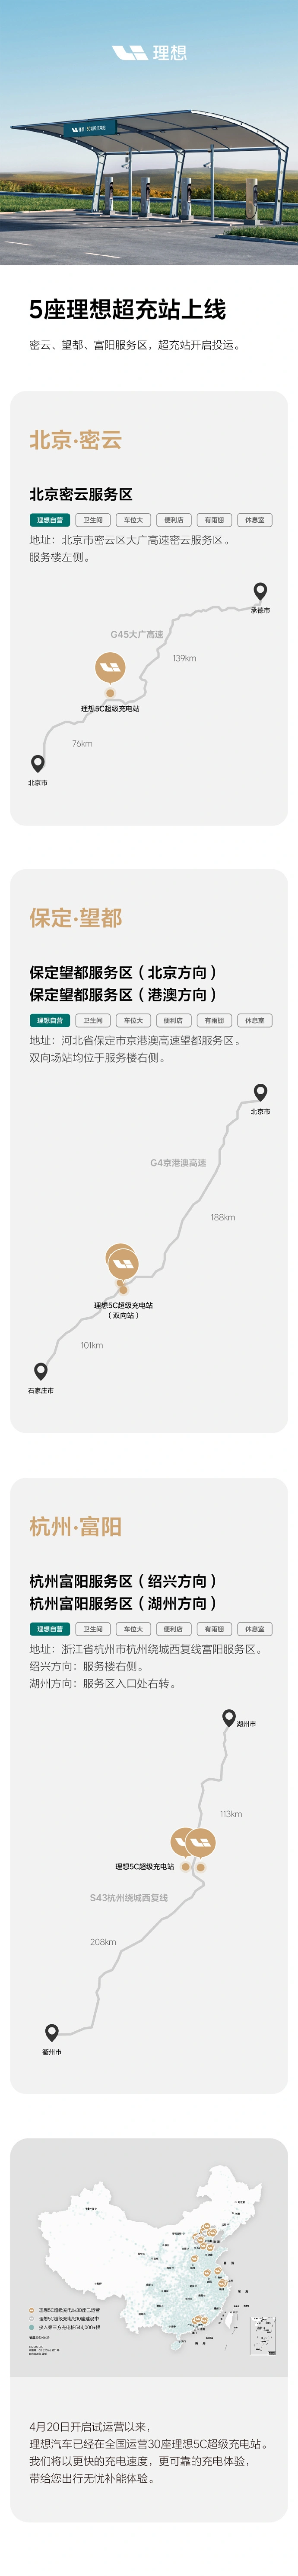 理想汽车新增 5 座超充站：覆盖北京、保定、杭州等地